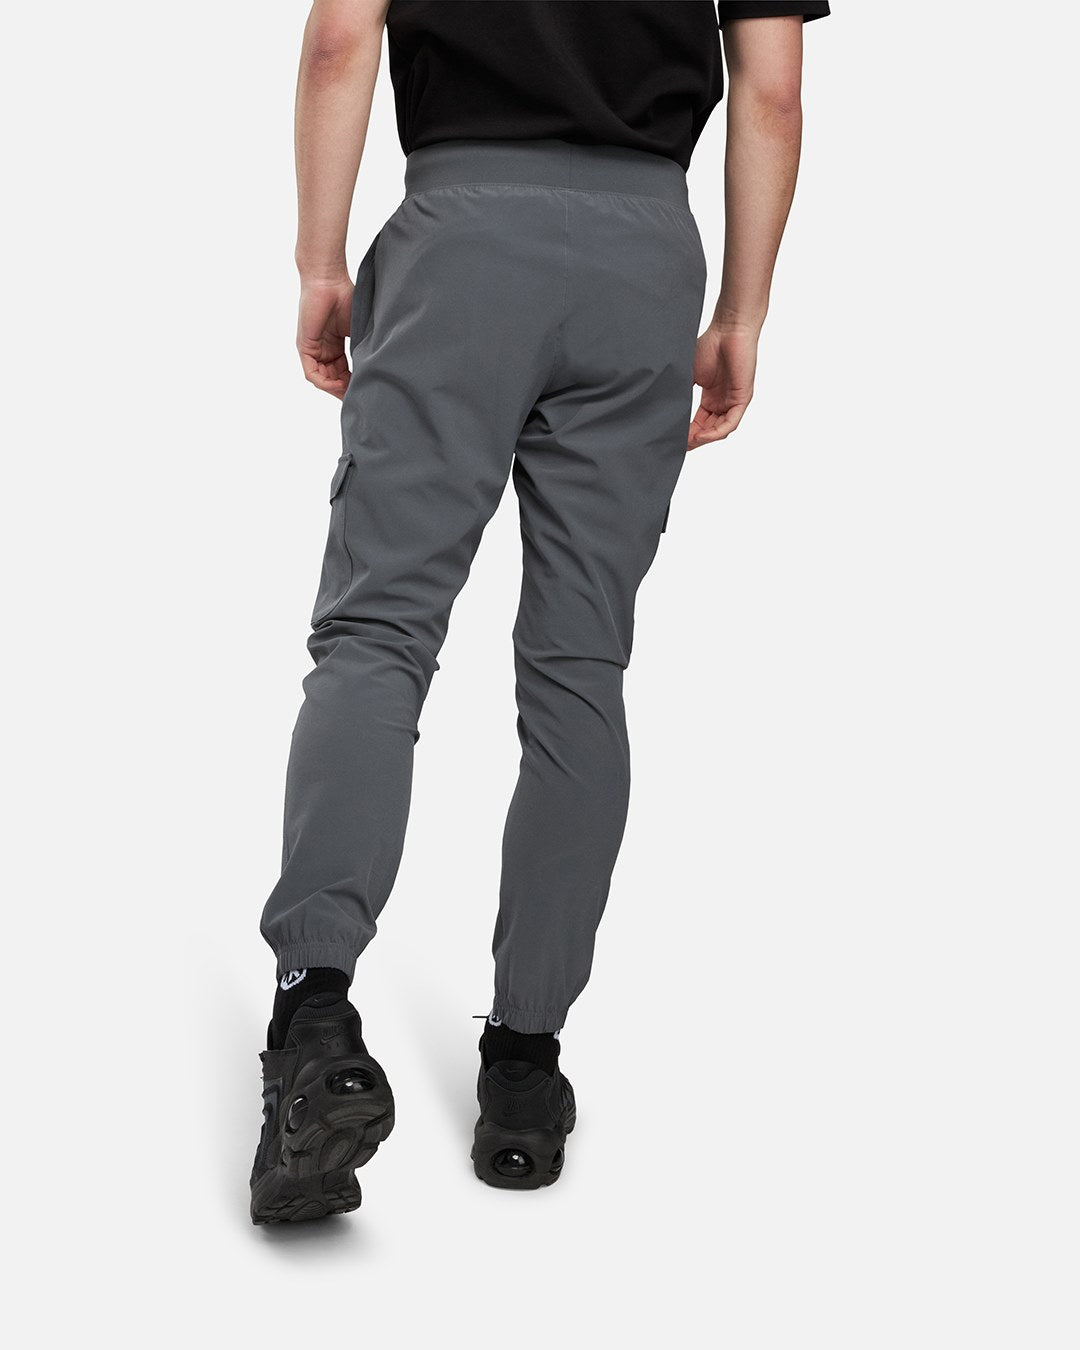 Pantaloni in tessuto elasticizzato Under Armour - Grigio/Nero